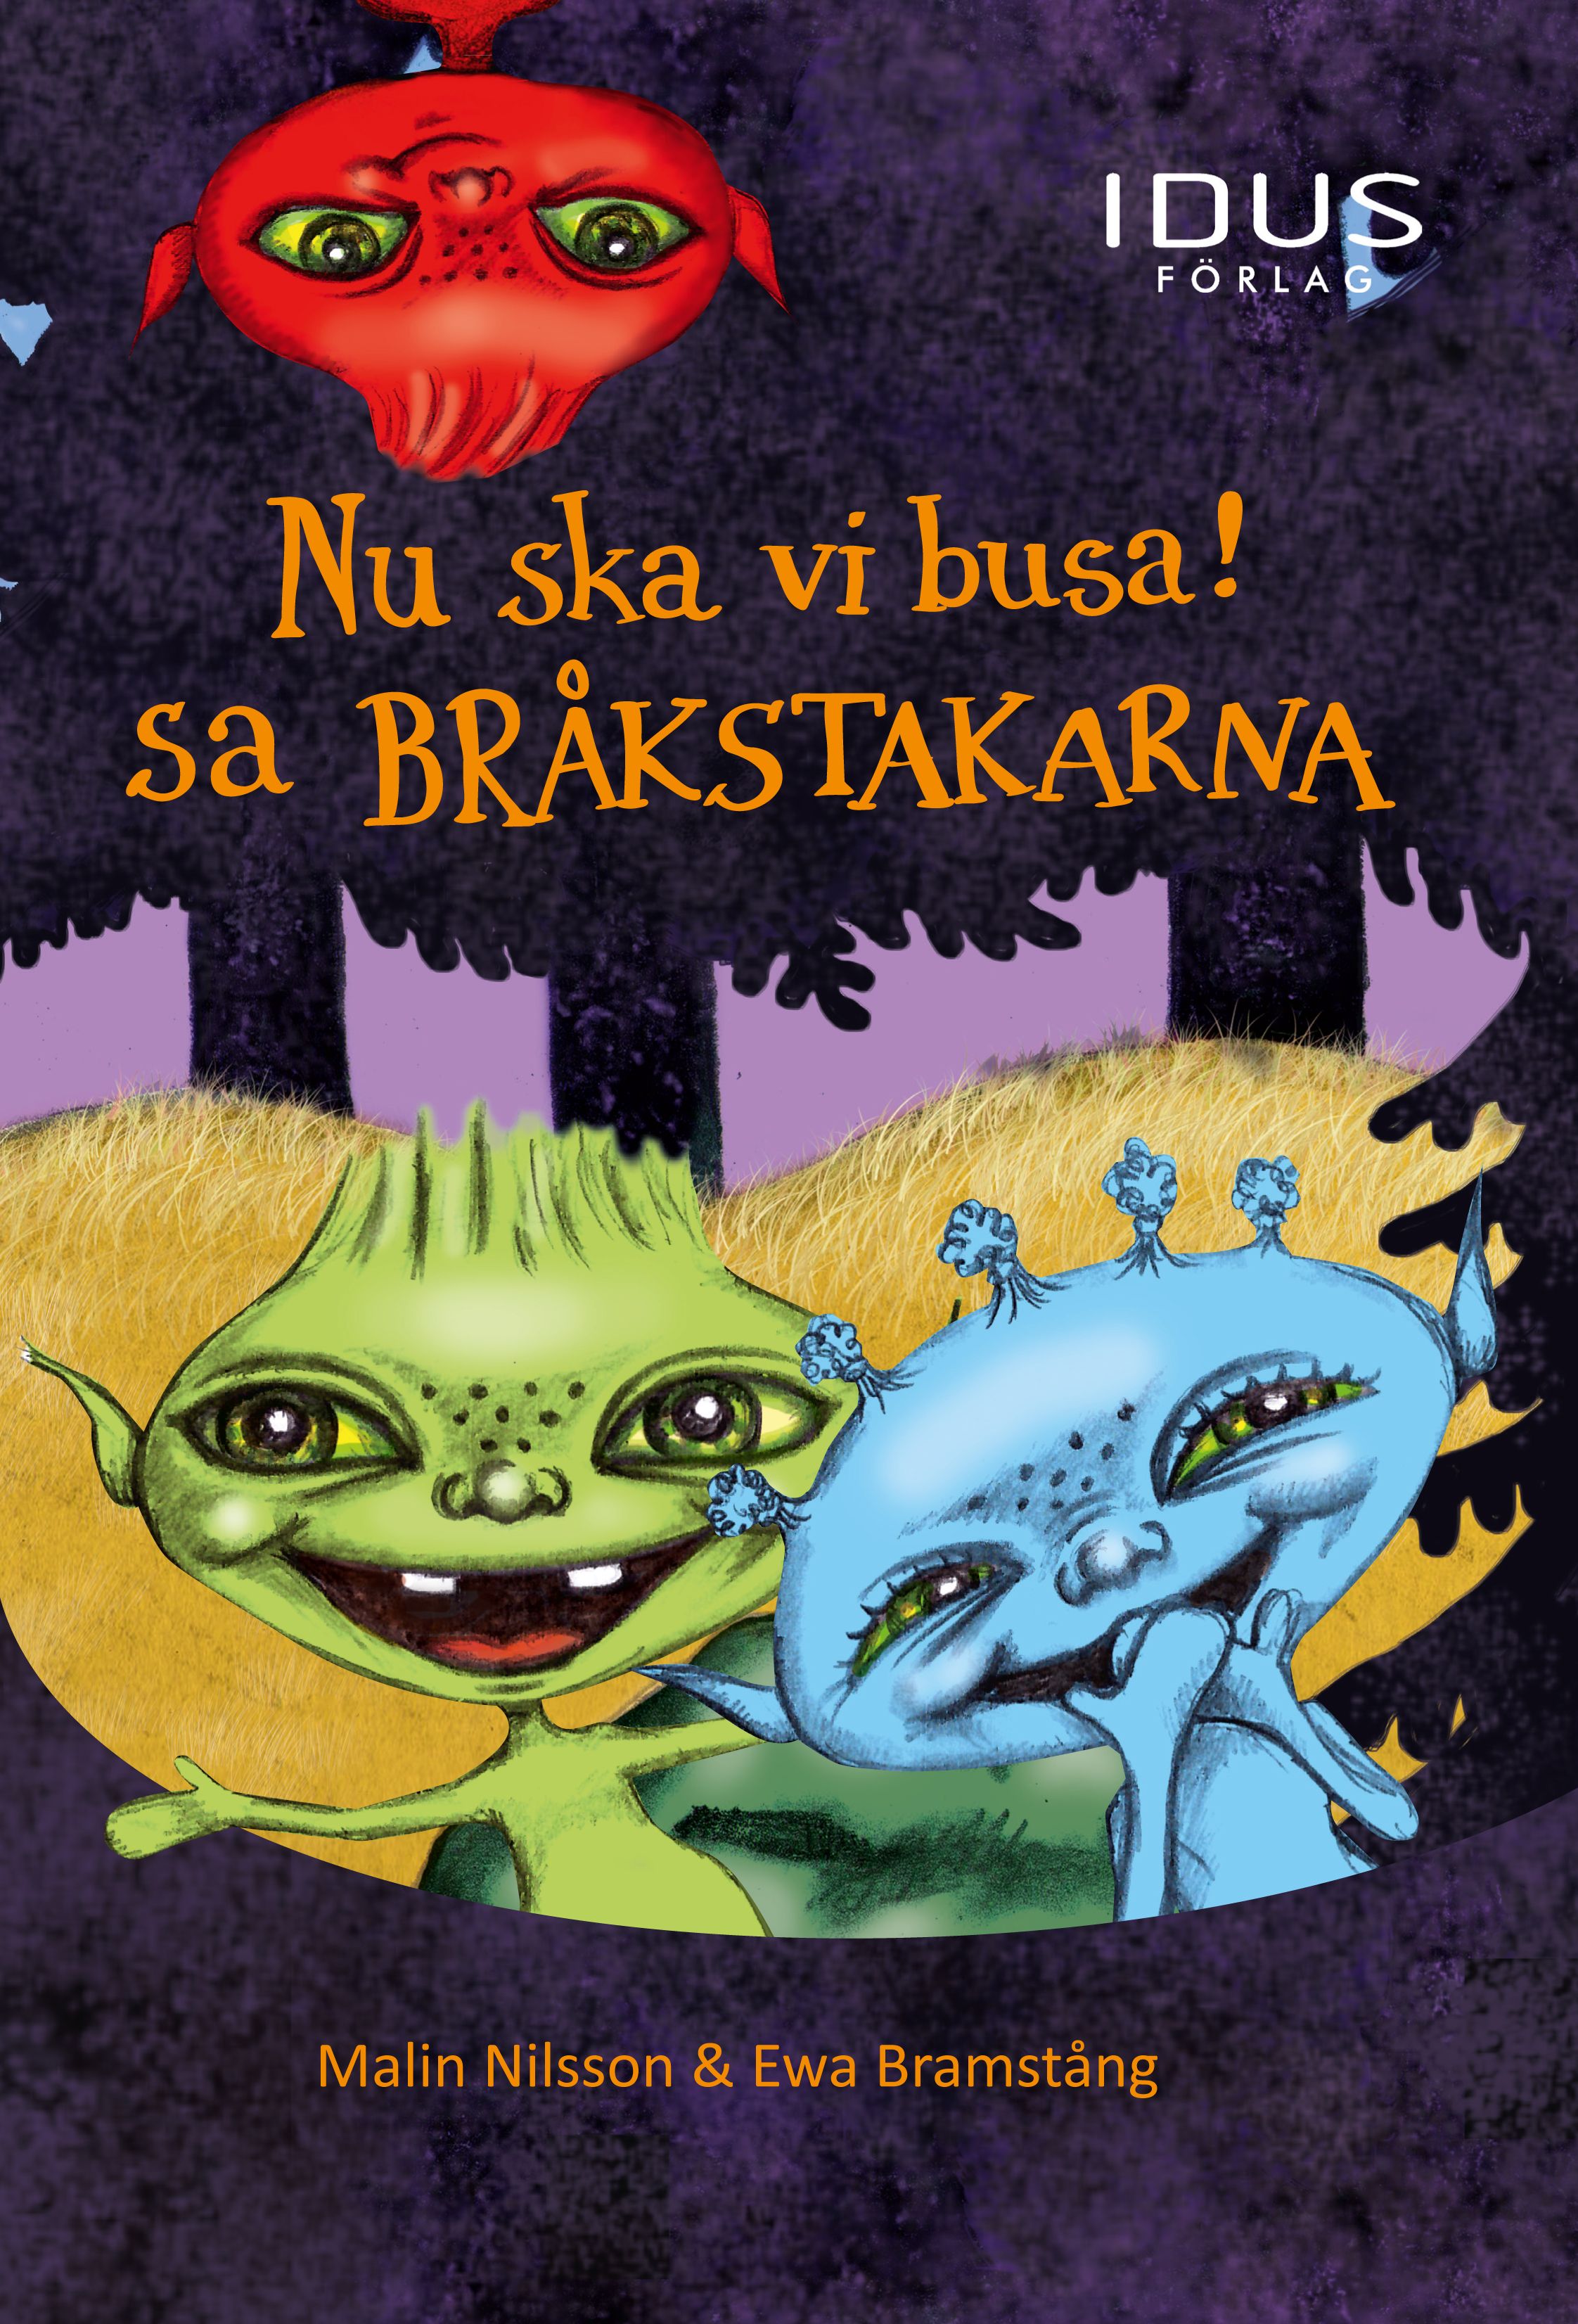 Nu ska vi busa! sa Bråkstakarna, eBook by Malin Nilsson